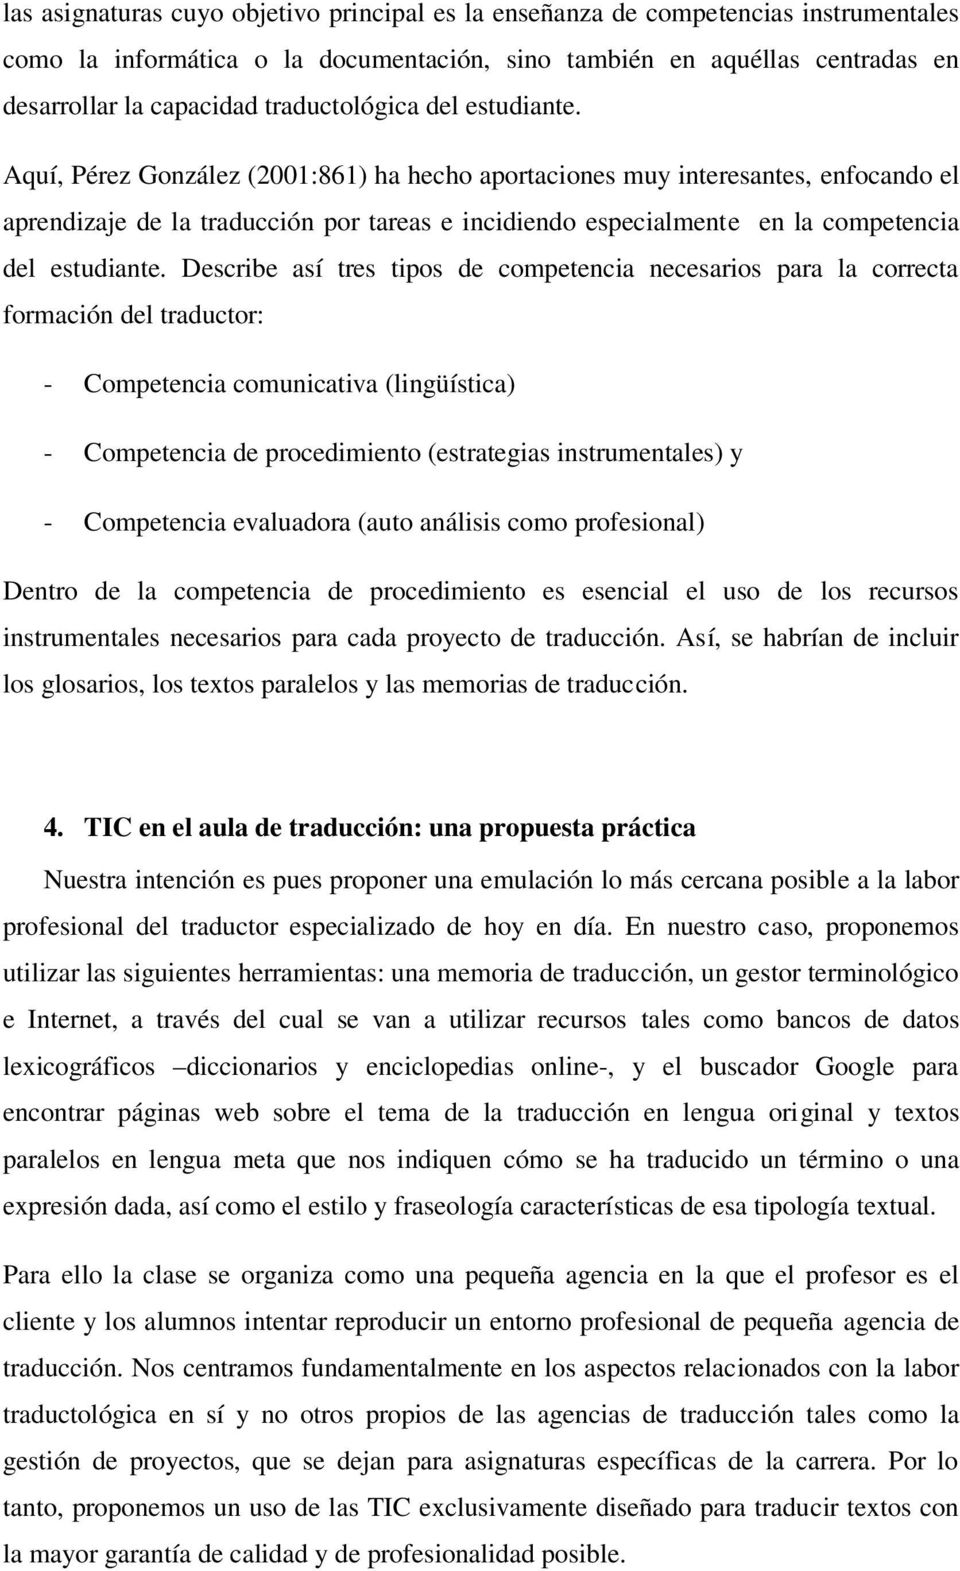 Aquí, Pérez González (2001:861) ha hecho aportaciones muy interesantes, enfocando el aprendizaje de la traducción por tareas e incidiendo especialmente en la competencia del estudiante.